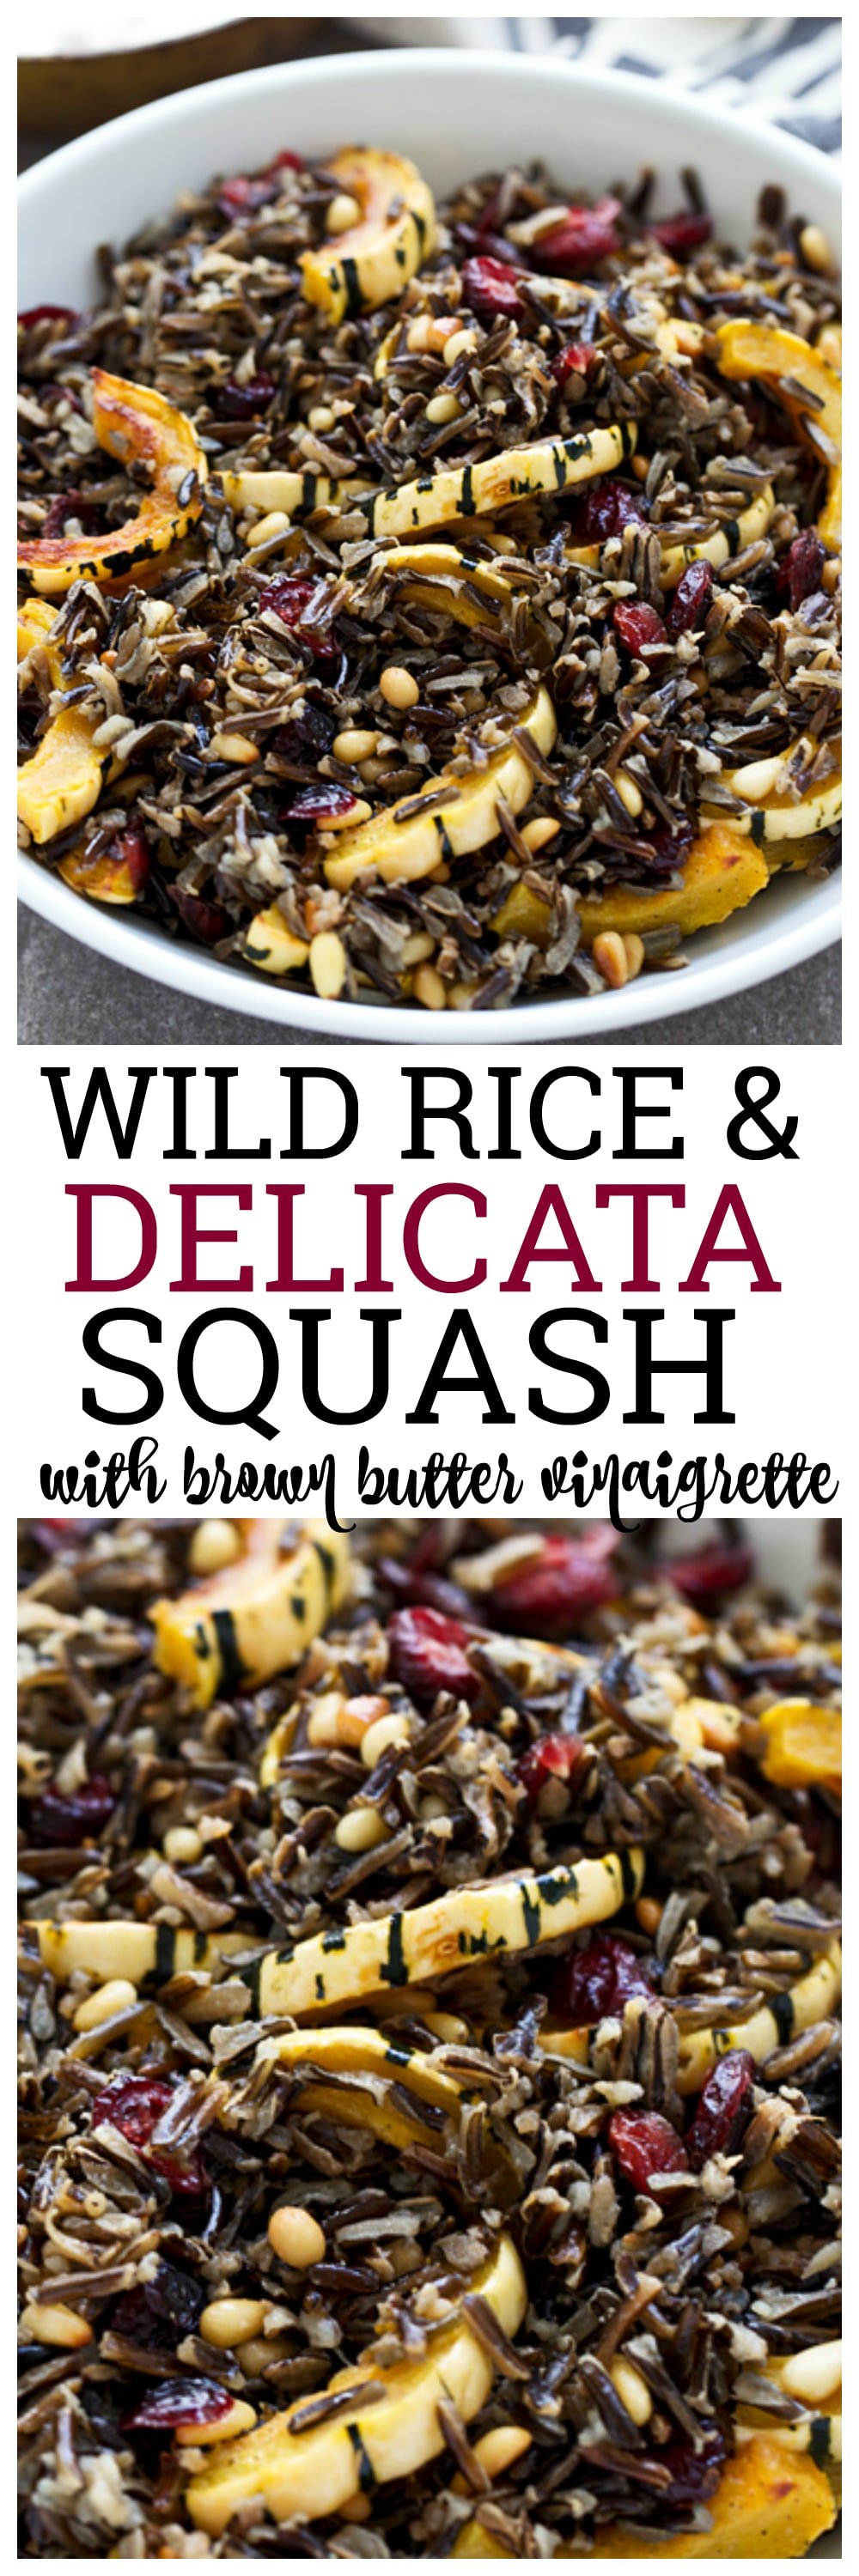 Wild Rice & Delicata Squash with Brown Butter Vinaigrette